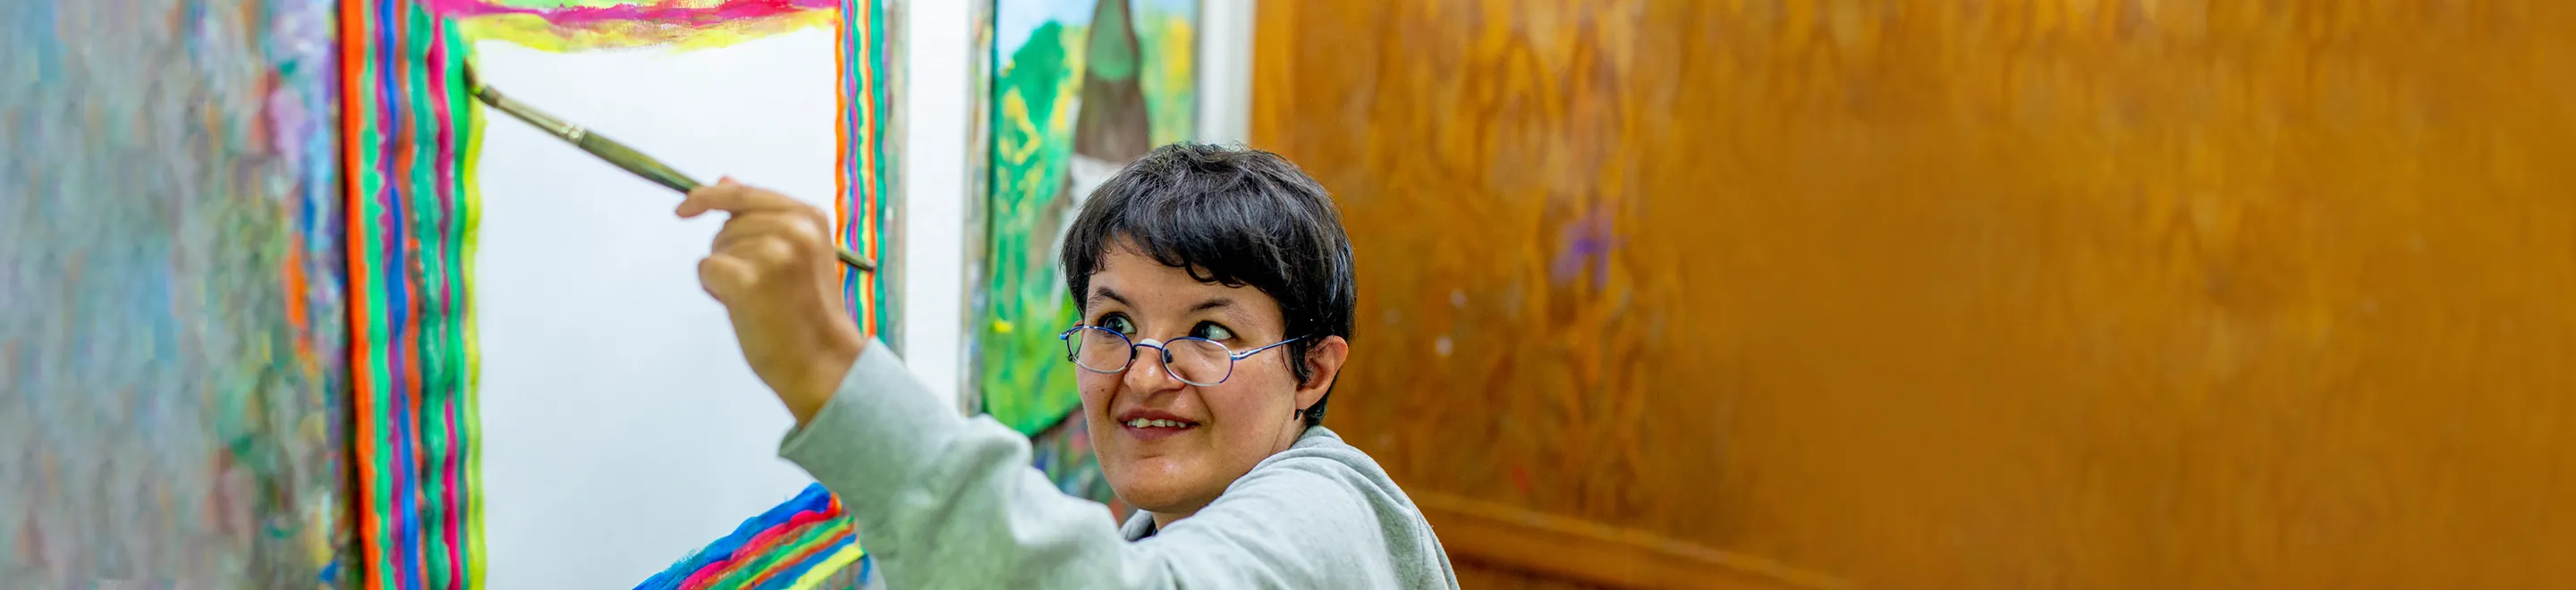 Eine Frau malt mit einem Pinsel und bunten Farben ein Bild.